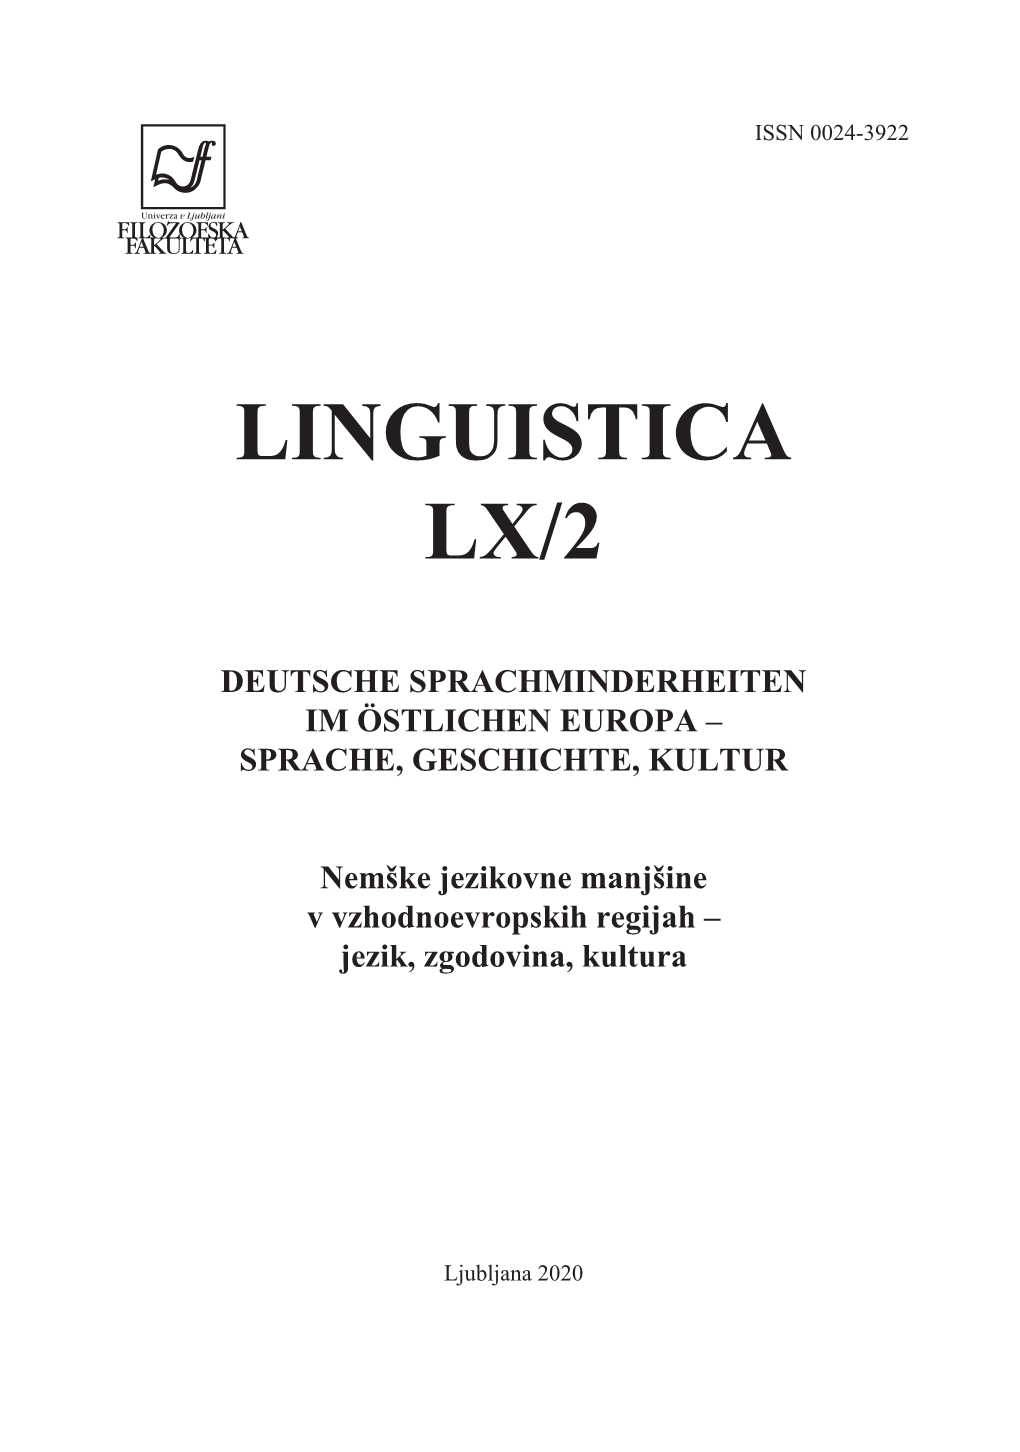 Linguistica Lx/2